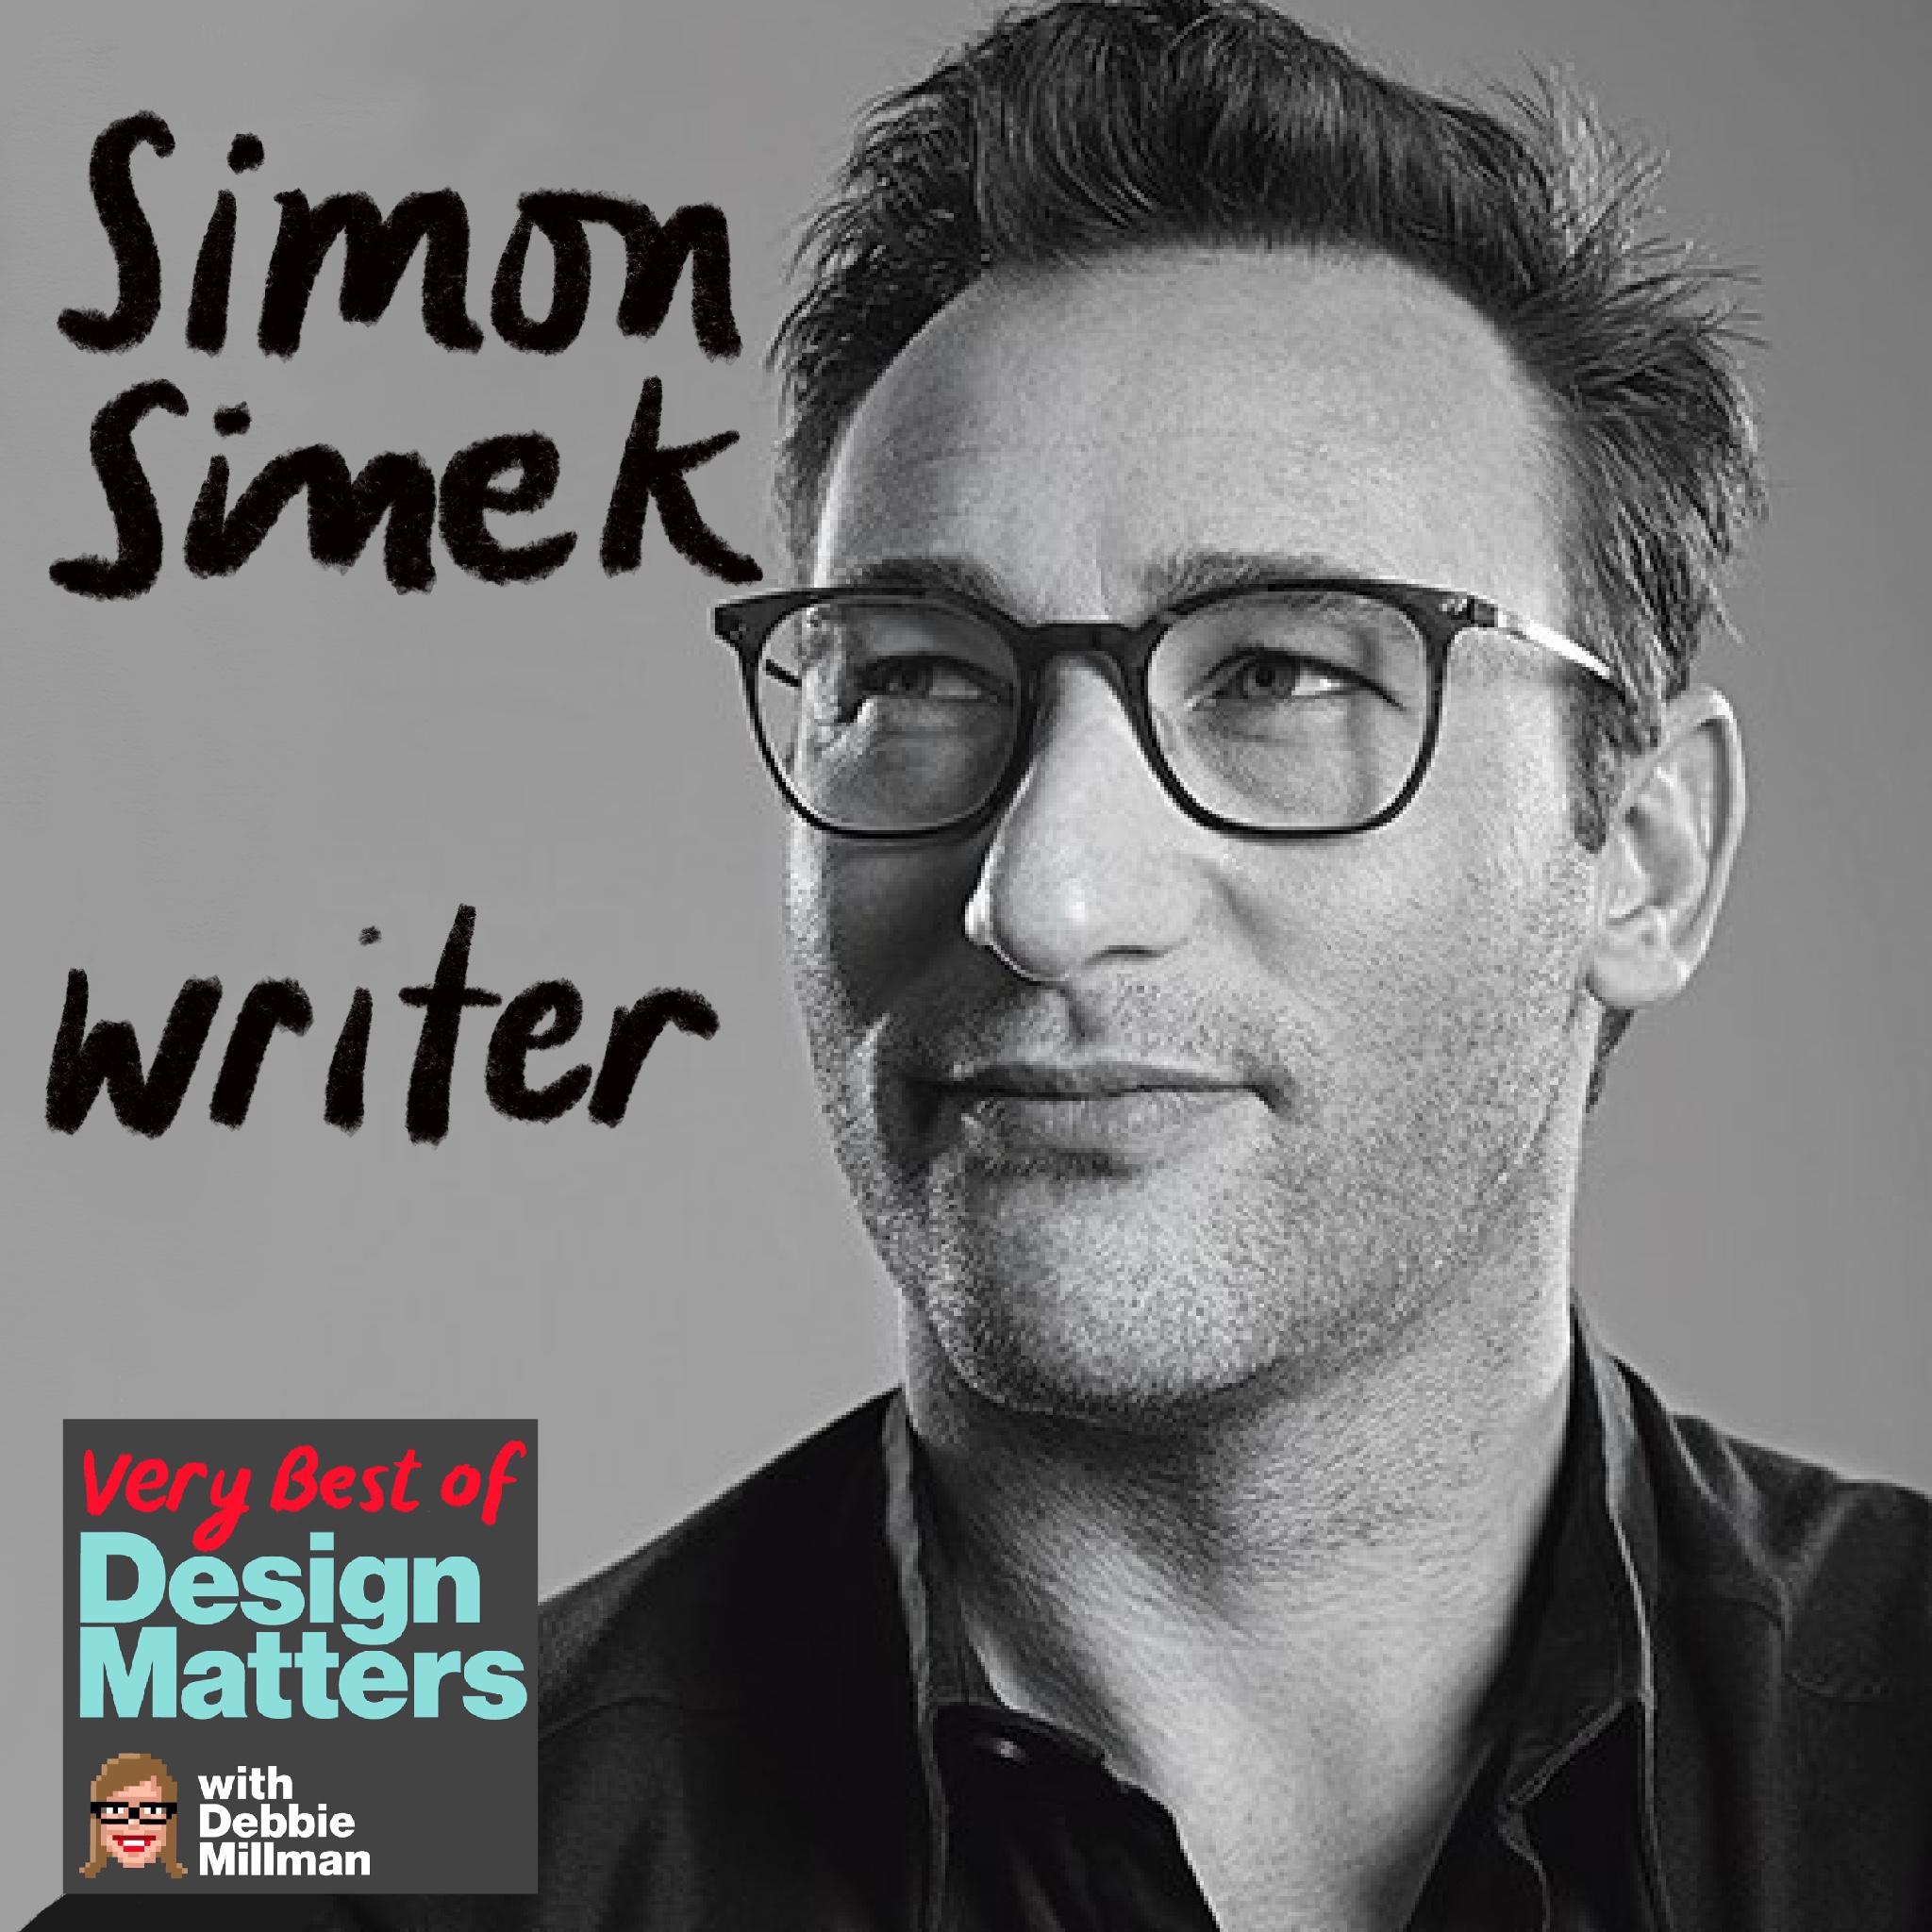 Thumbnail for "Best of Design Matters: Simon Sinek".